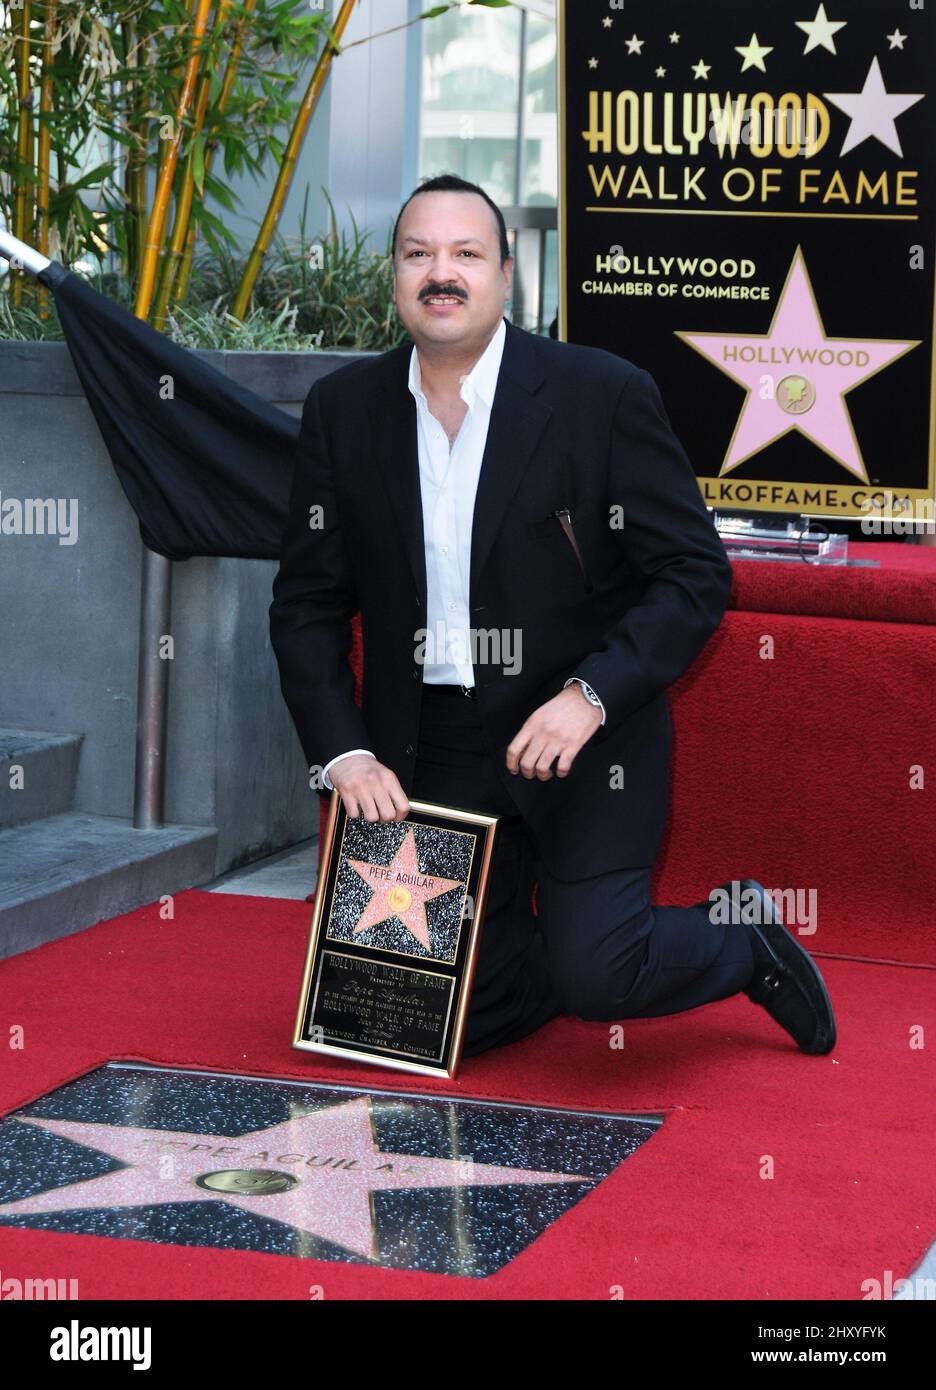 Pepe Aguilar Pepe Aguilar fue honrada con una estrella en el Paseo de la Fama de Hollywood, que se celebra frente al Live Nation Building Foto de stock